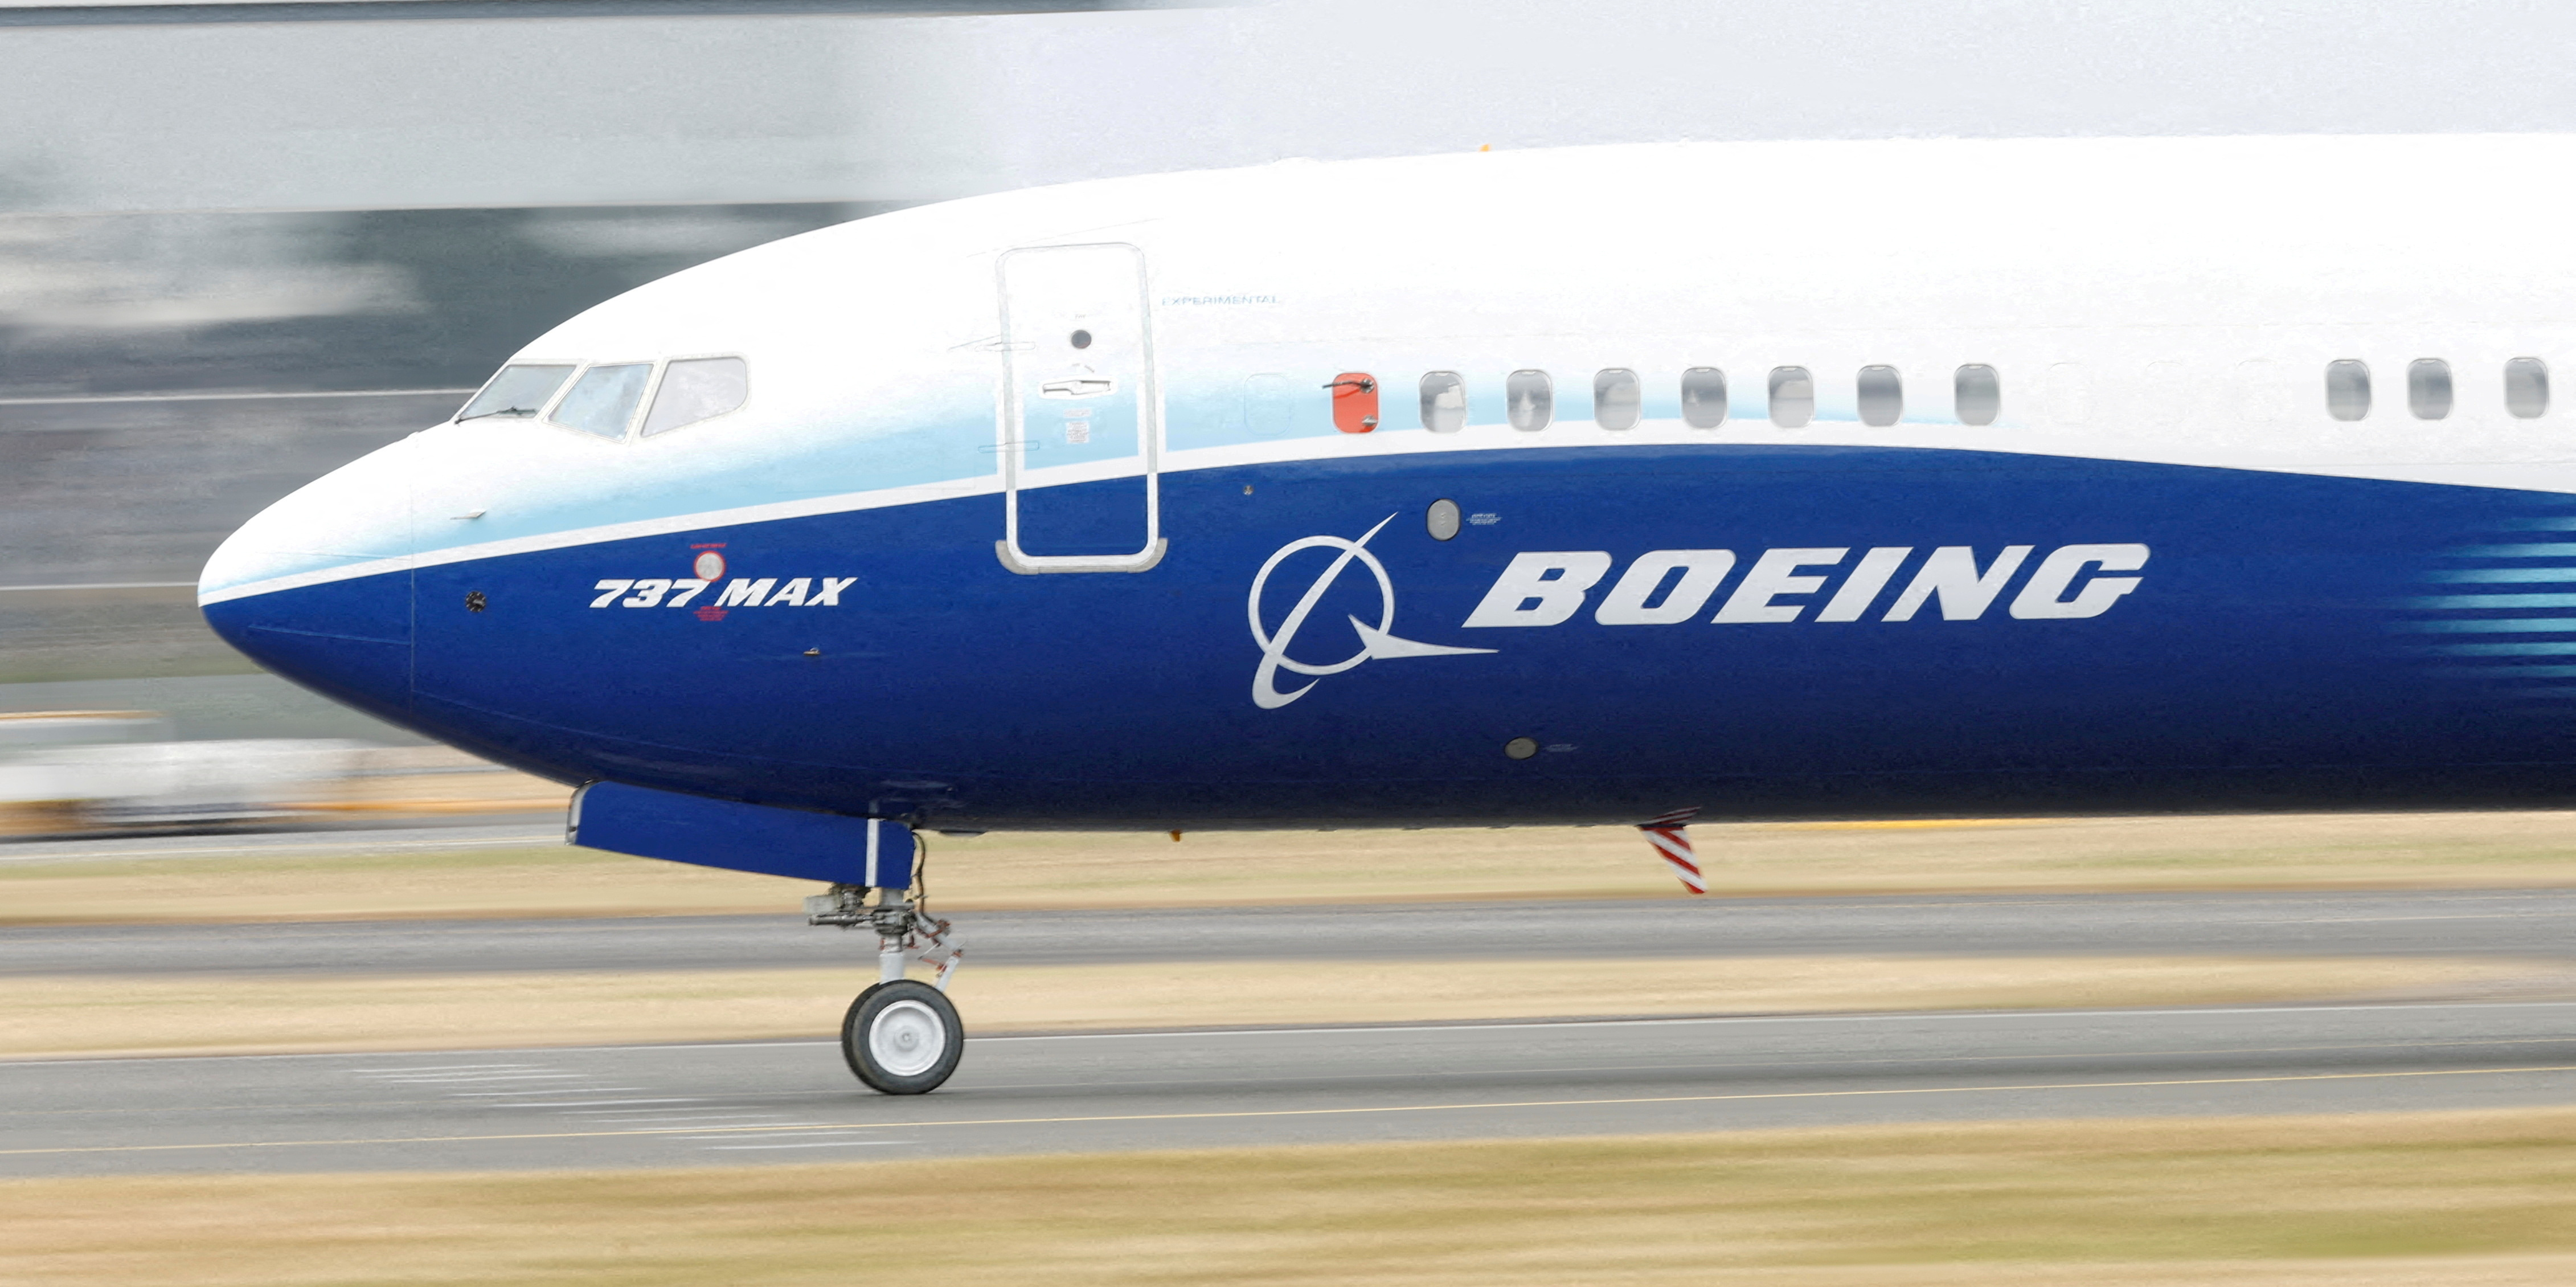 Un Boeing 737 Max 8 a atterri en Chine, une première depuis 2019